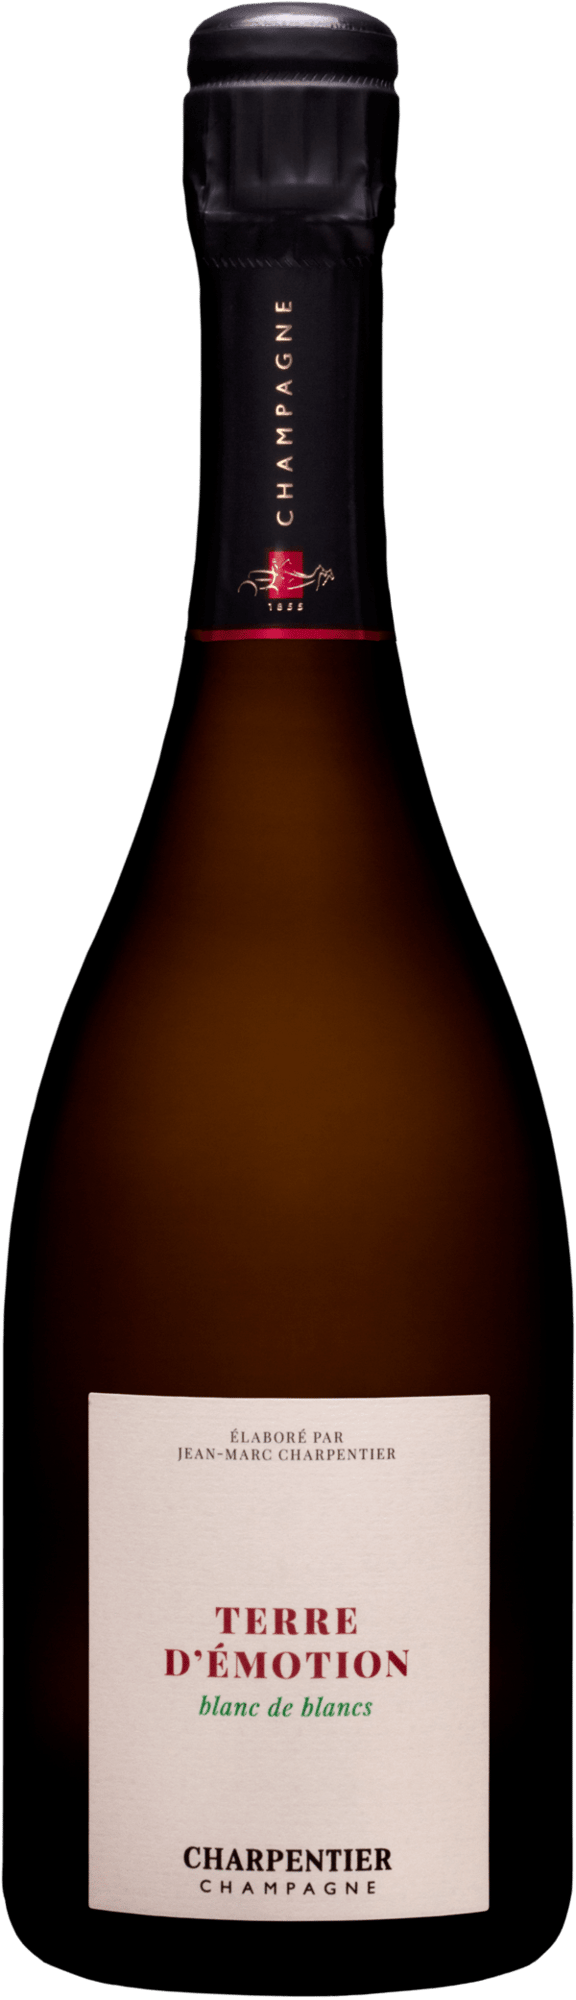 Champagne-Charpentier-Terre-dÉmotion-blanc-de -blancs